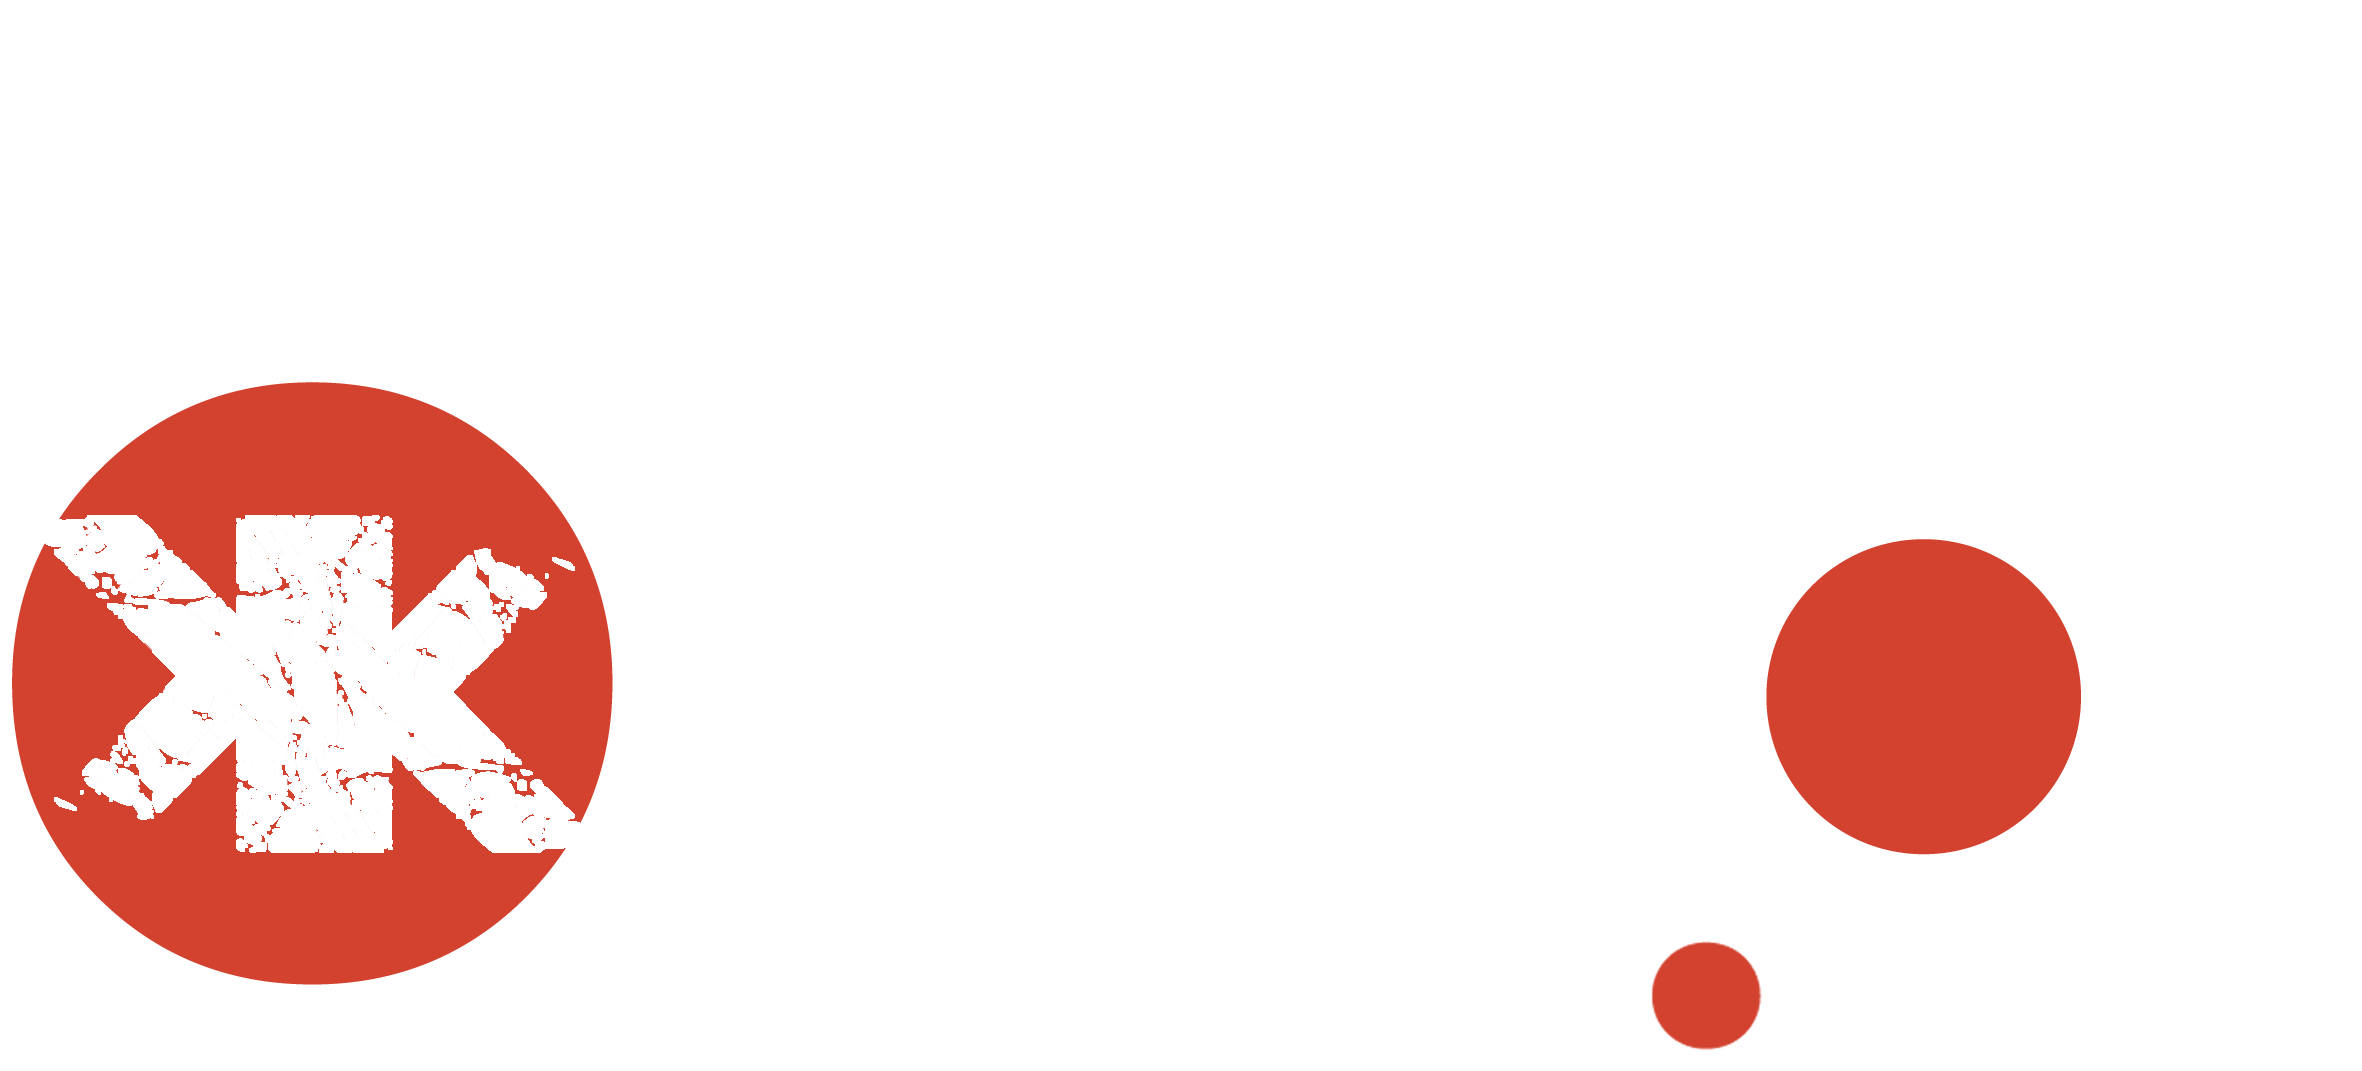 KBRALOK vuelve a apoyar esta edición de la TRANGOWORLD TREBOL TRAIL. Muchas gracias a Raúl y todo el equipo !!